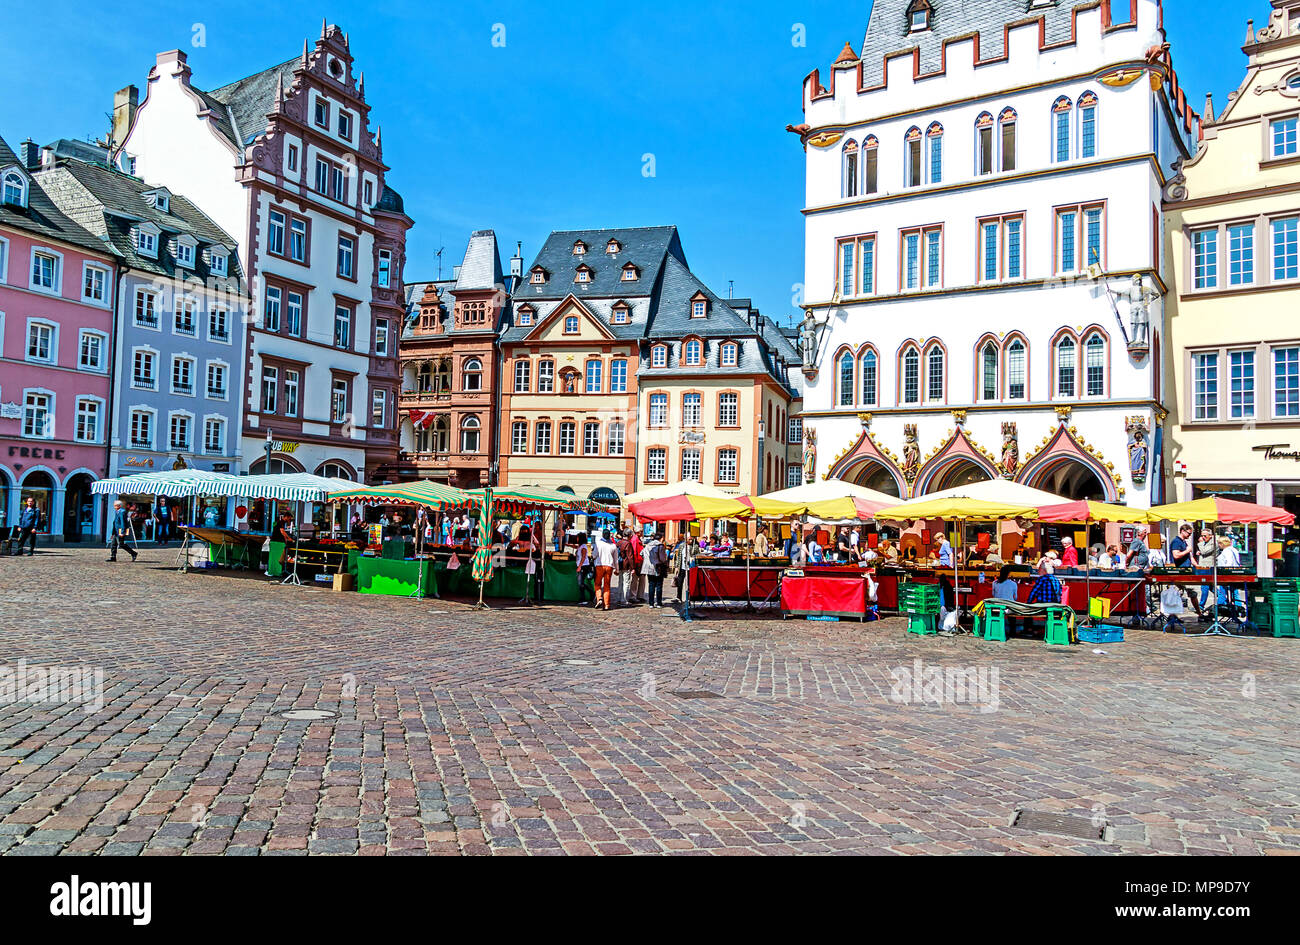 TRIER, Deutschland - 15. MAI 2018: die malerischen iconic Marktplatz ist einer der schönsten alten deutschen Marktplätzen in Trier, die älteste deutsche Stadt, Stockfoto